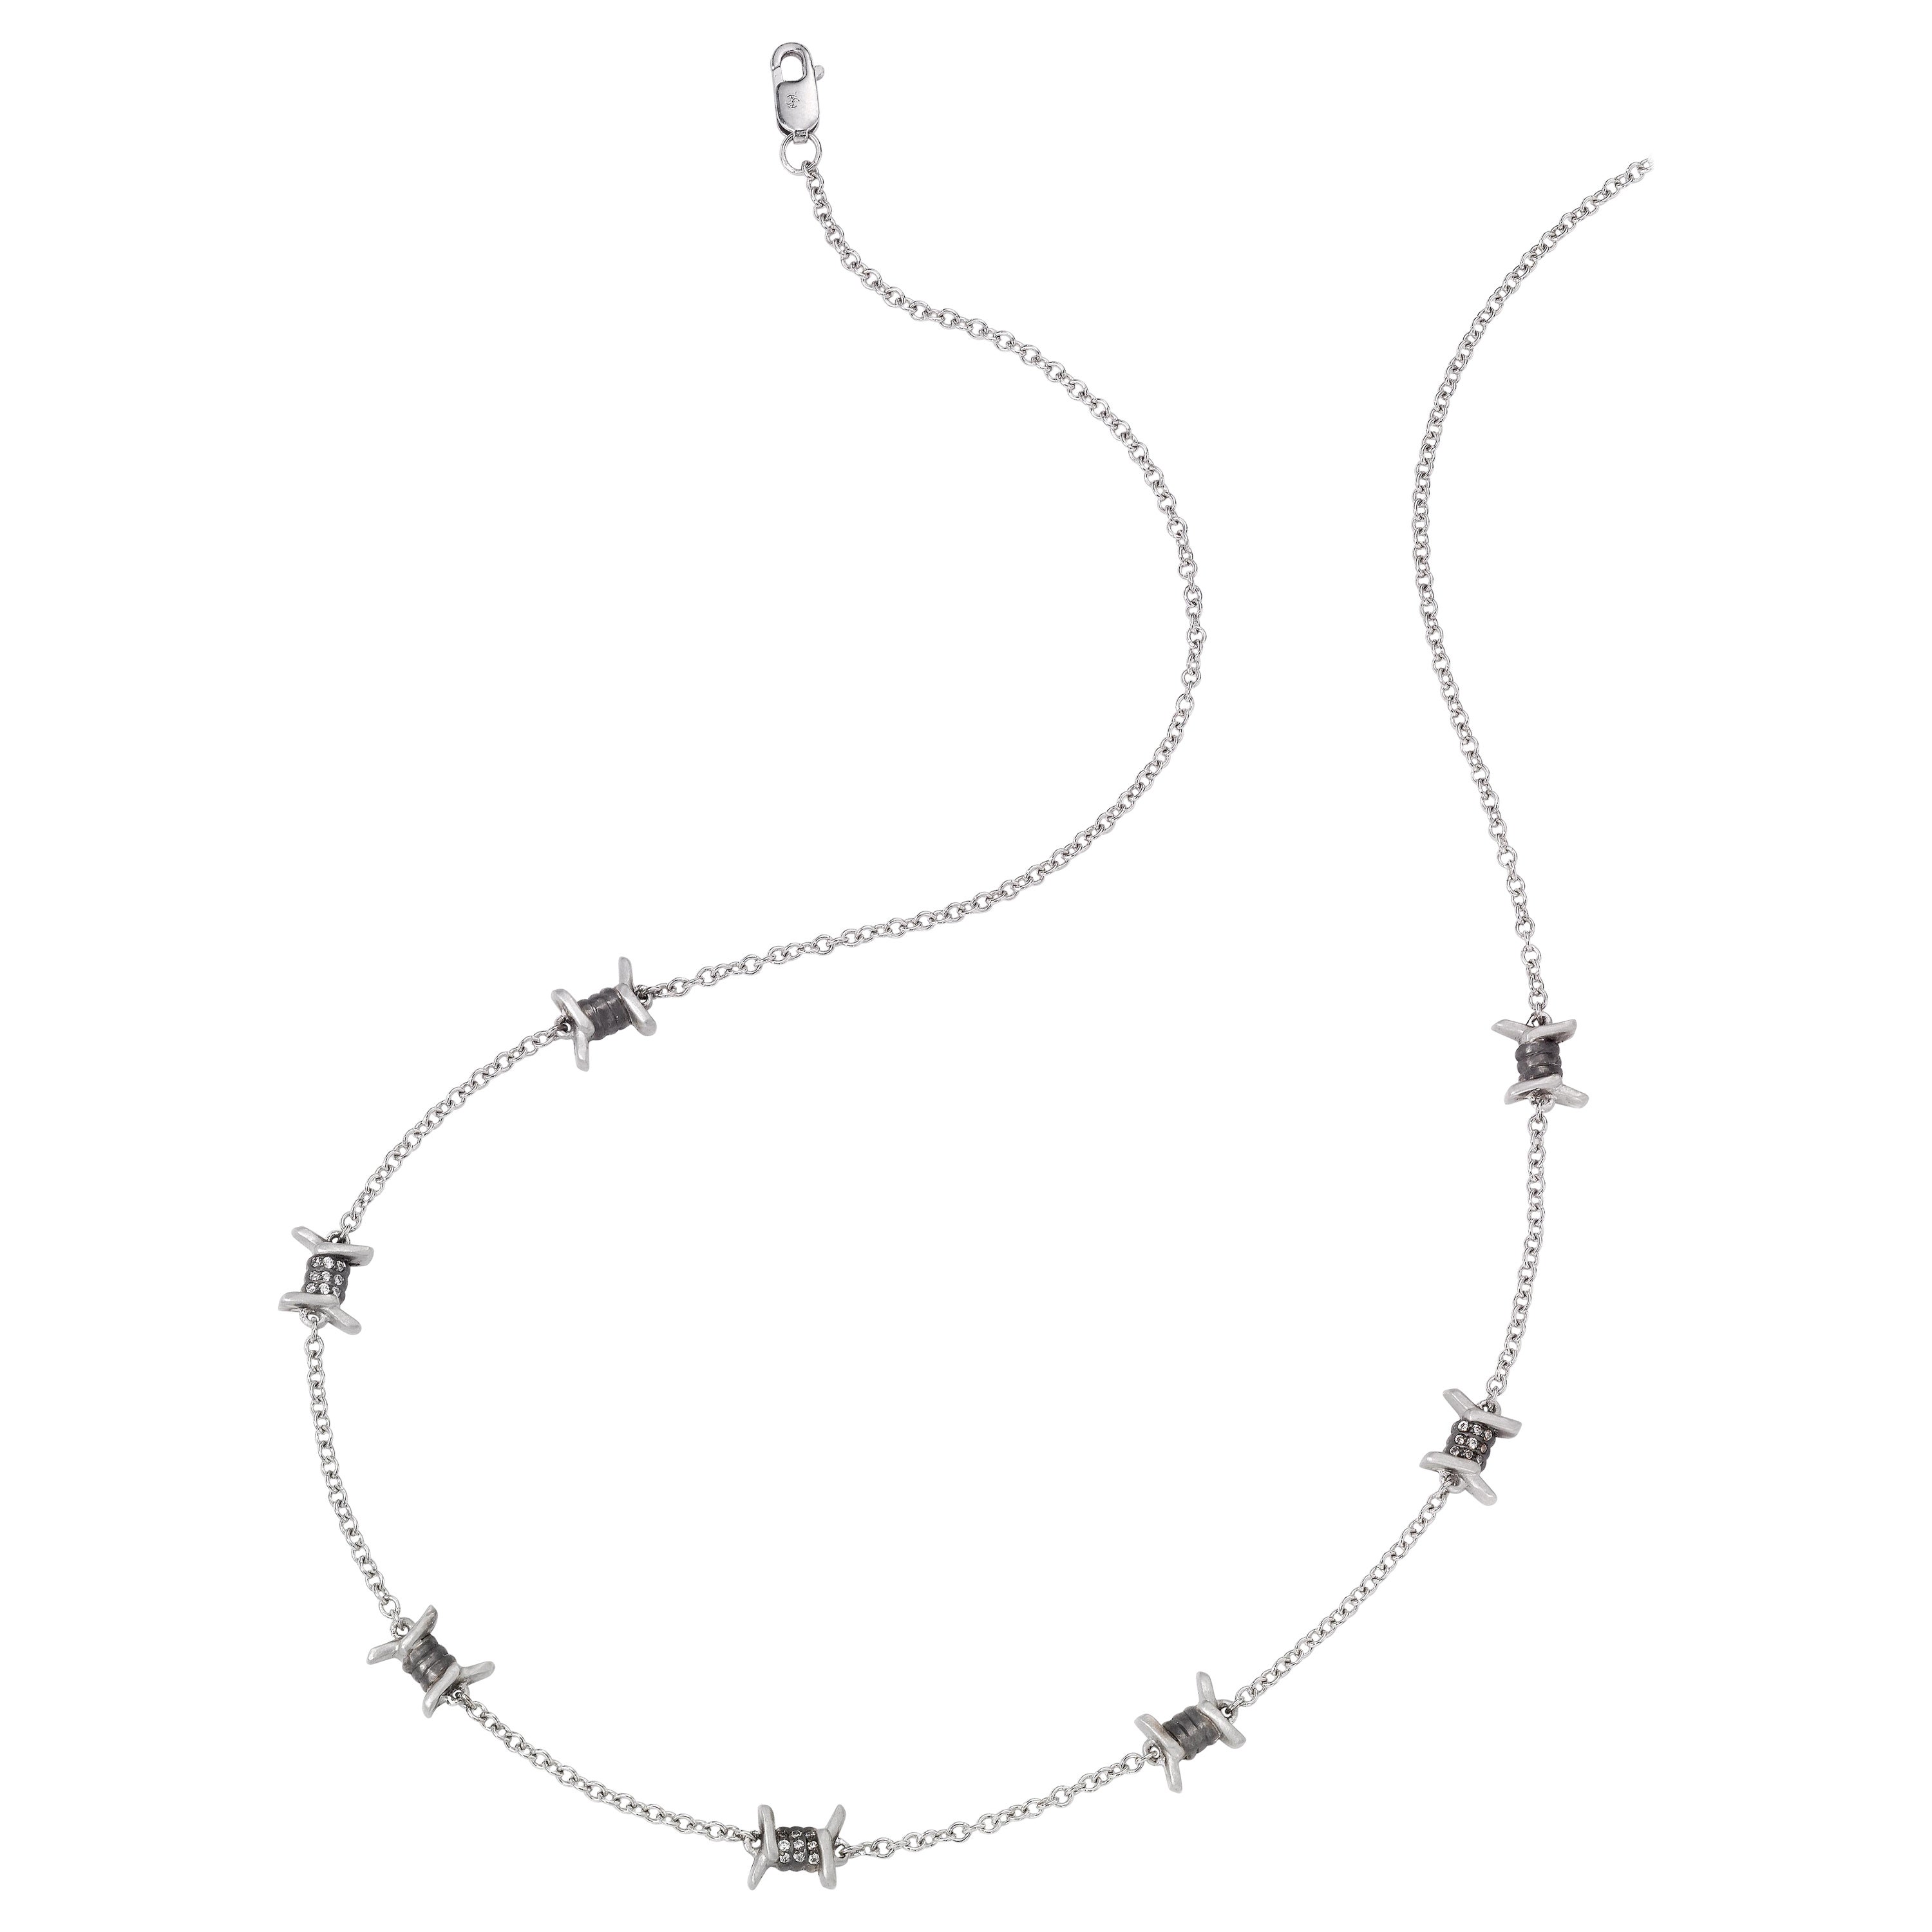 Platin-Halskette von Wendy Brandes mit Drahtmotiv und Satin-Finish-Diamanten